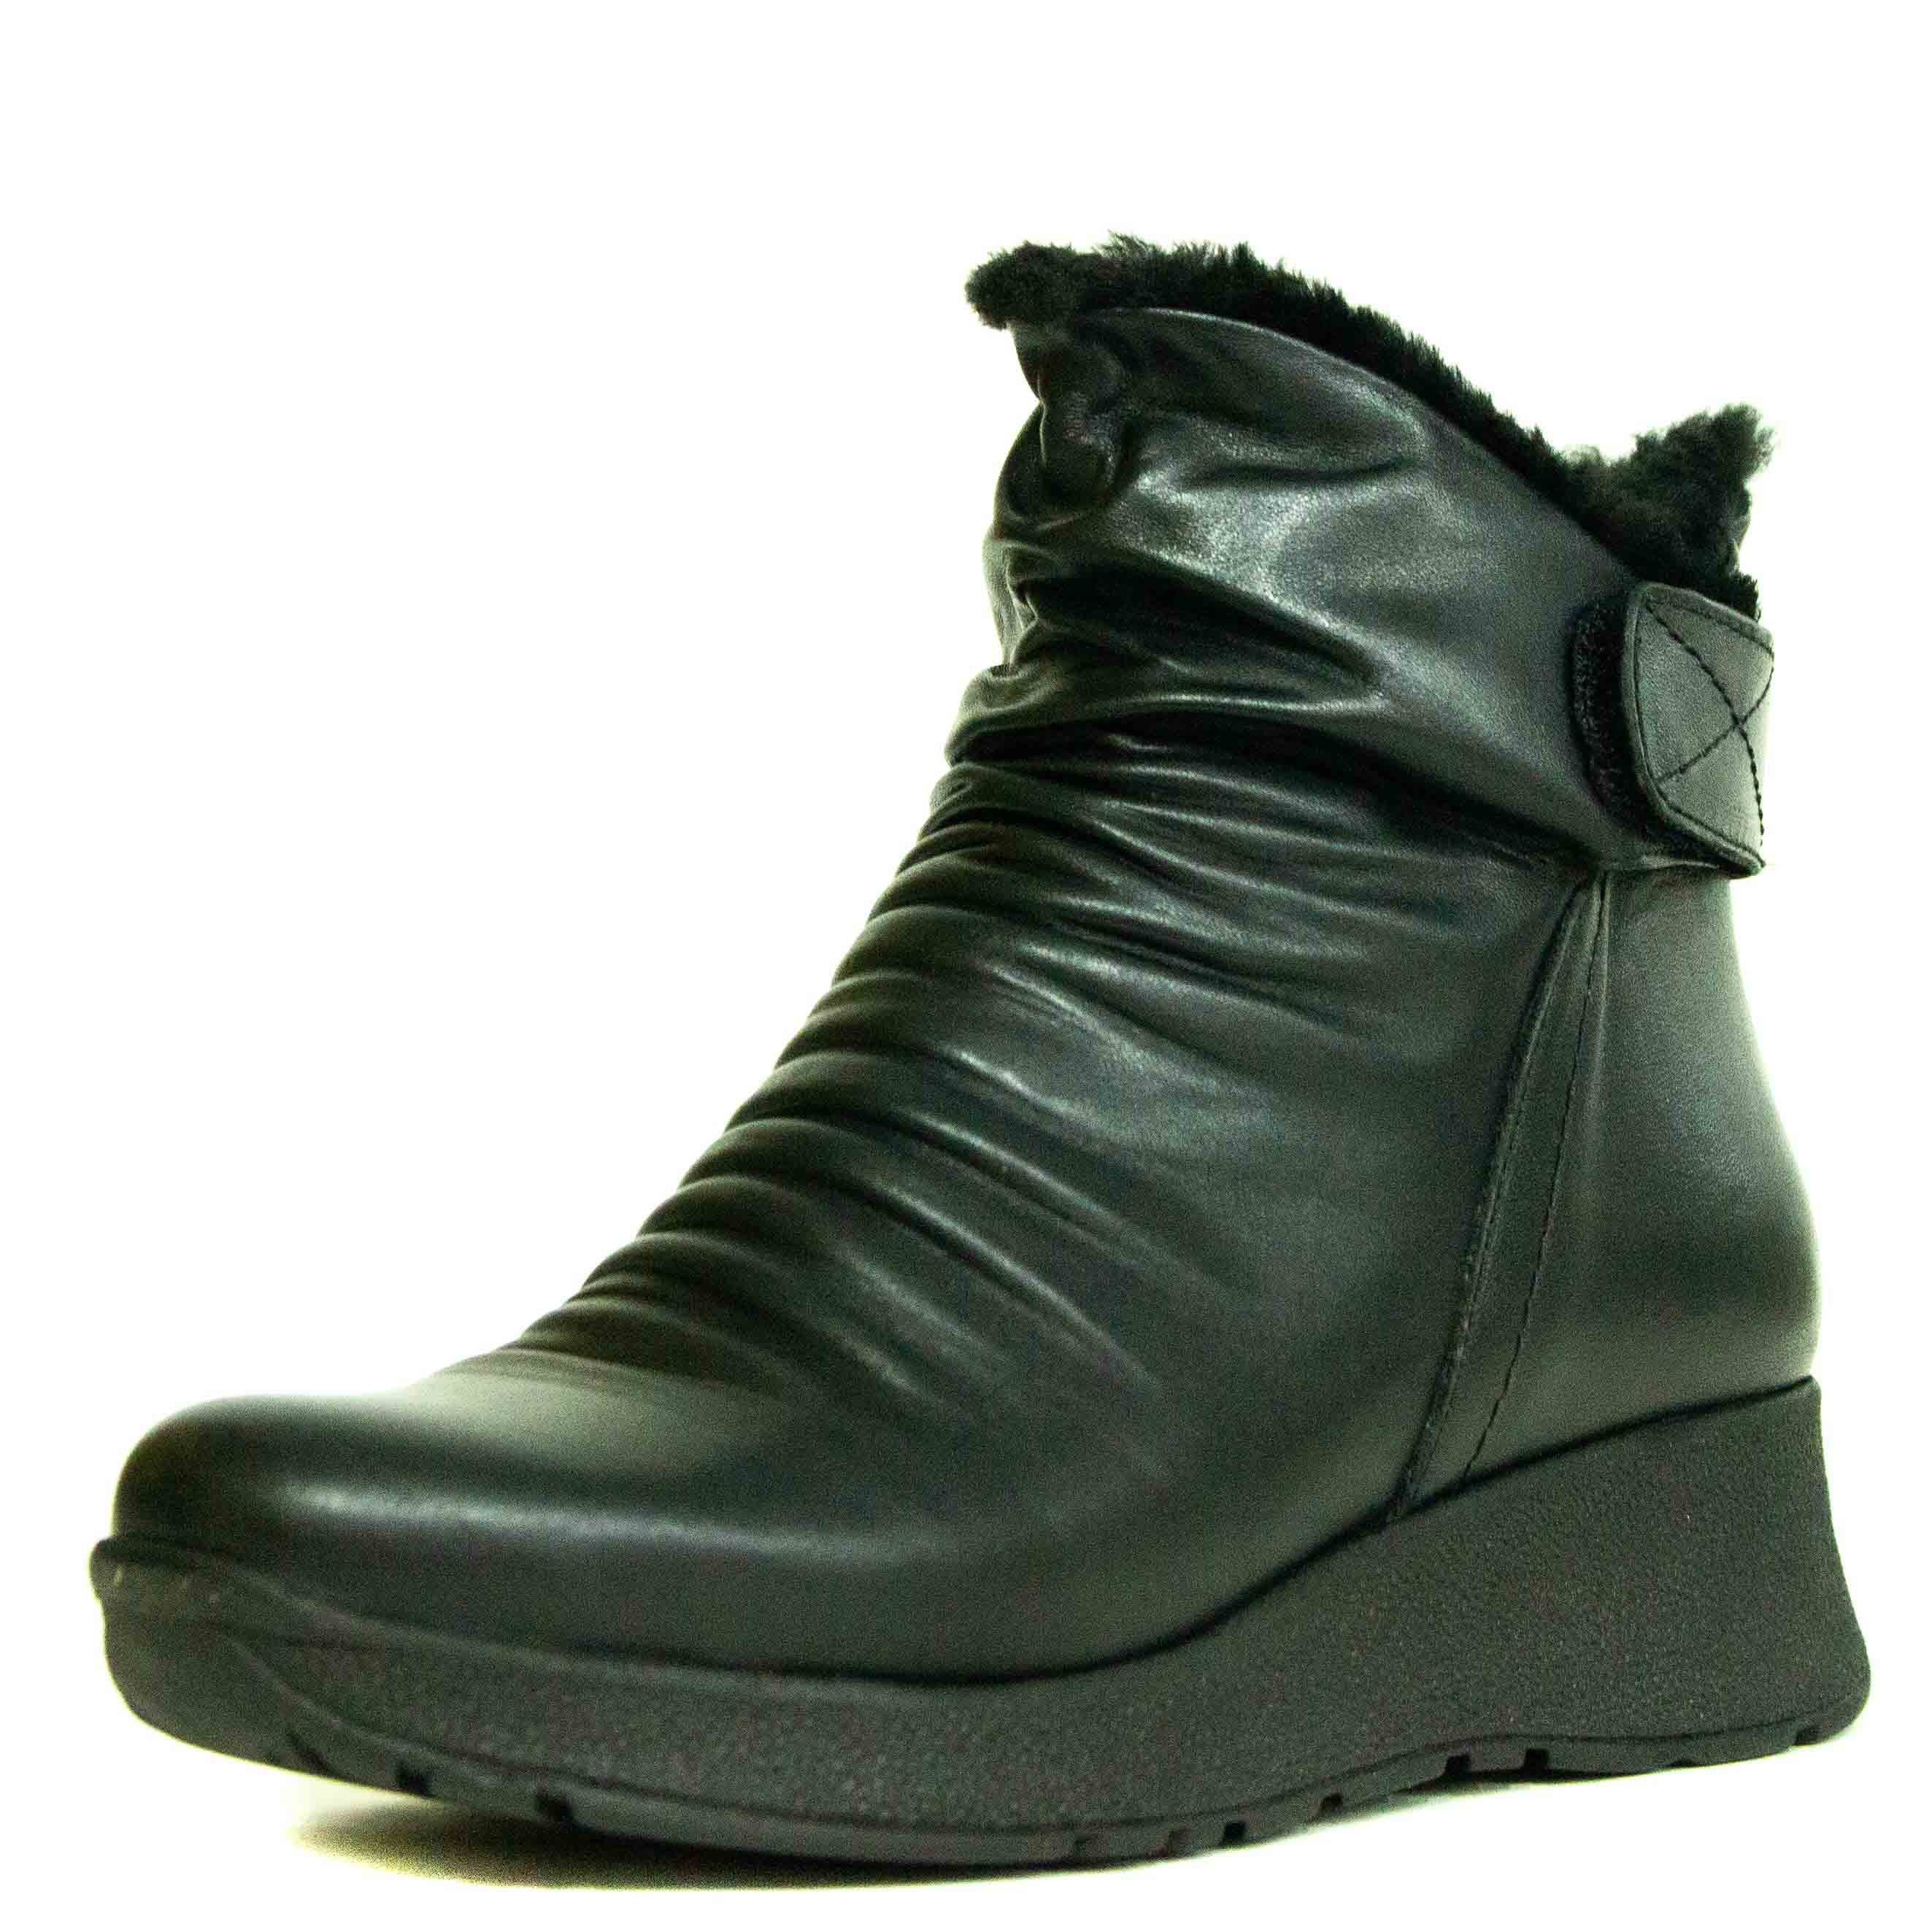 Ботинки женские Shoes Market 730-250-01 черные 38 RU